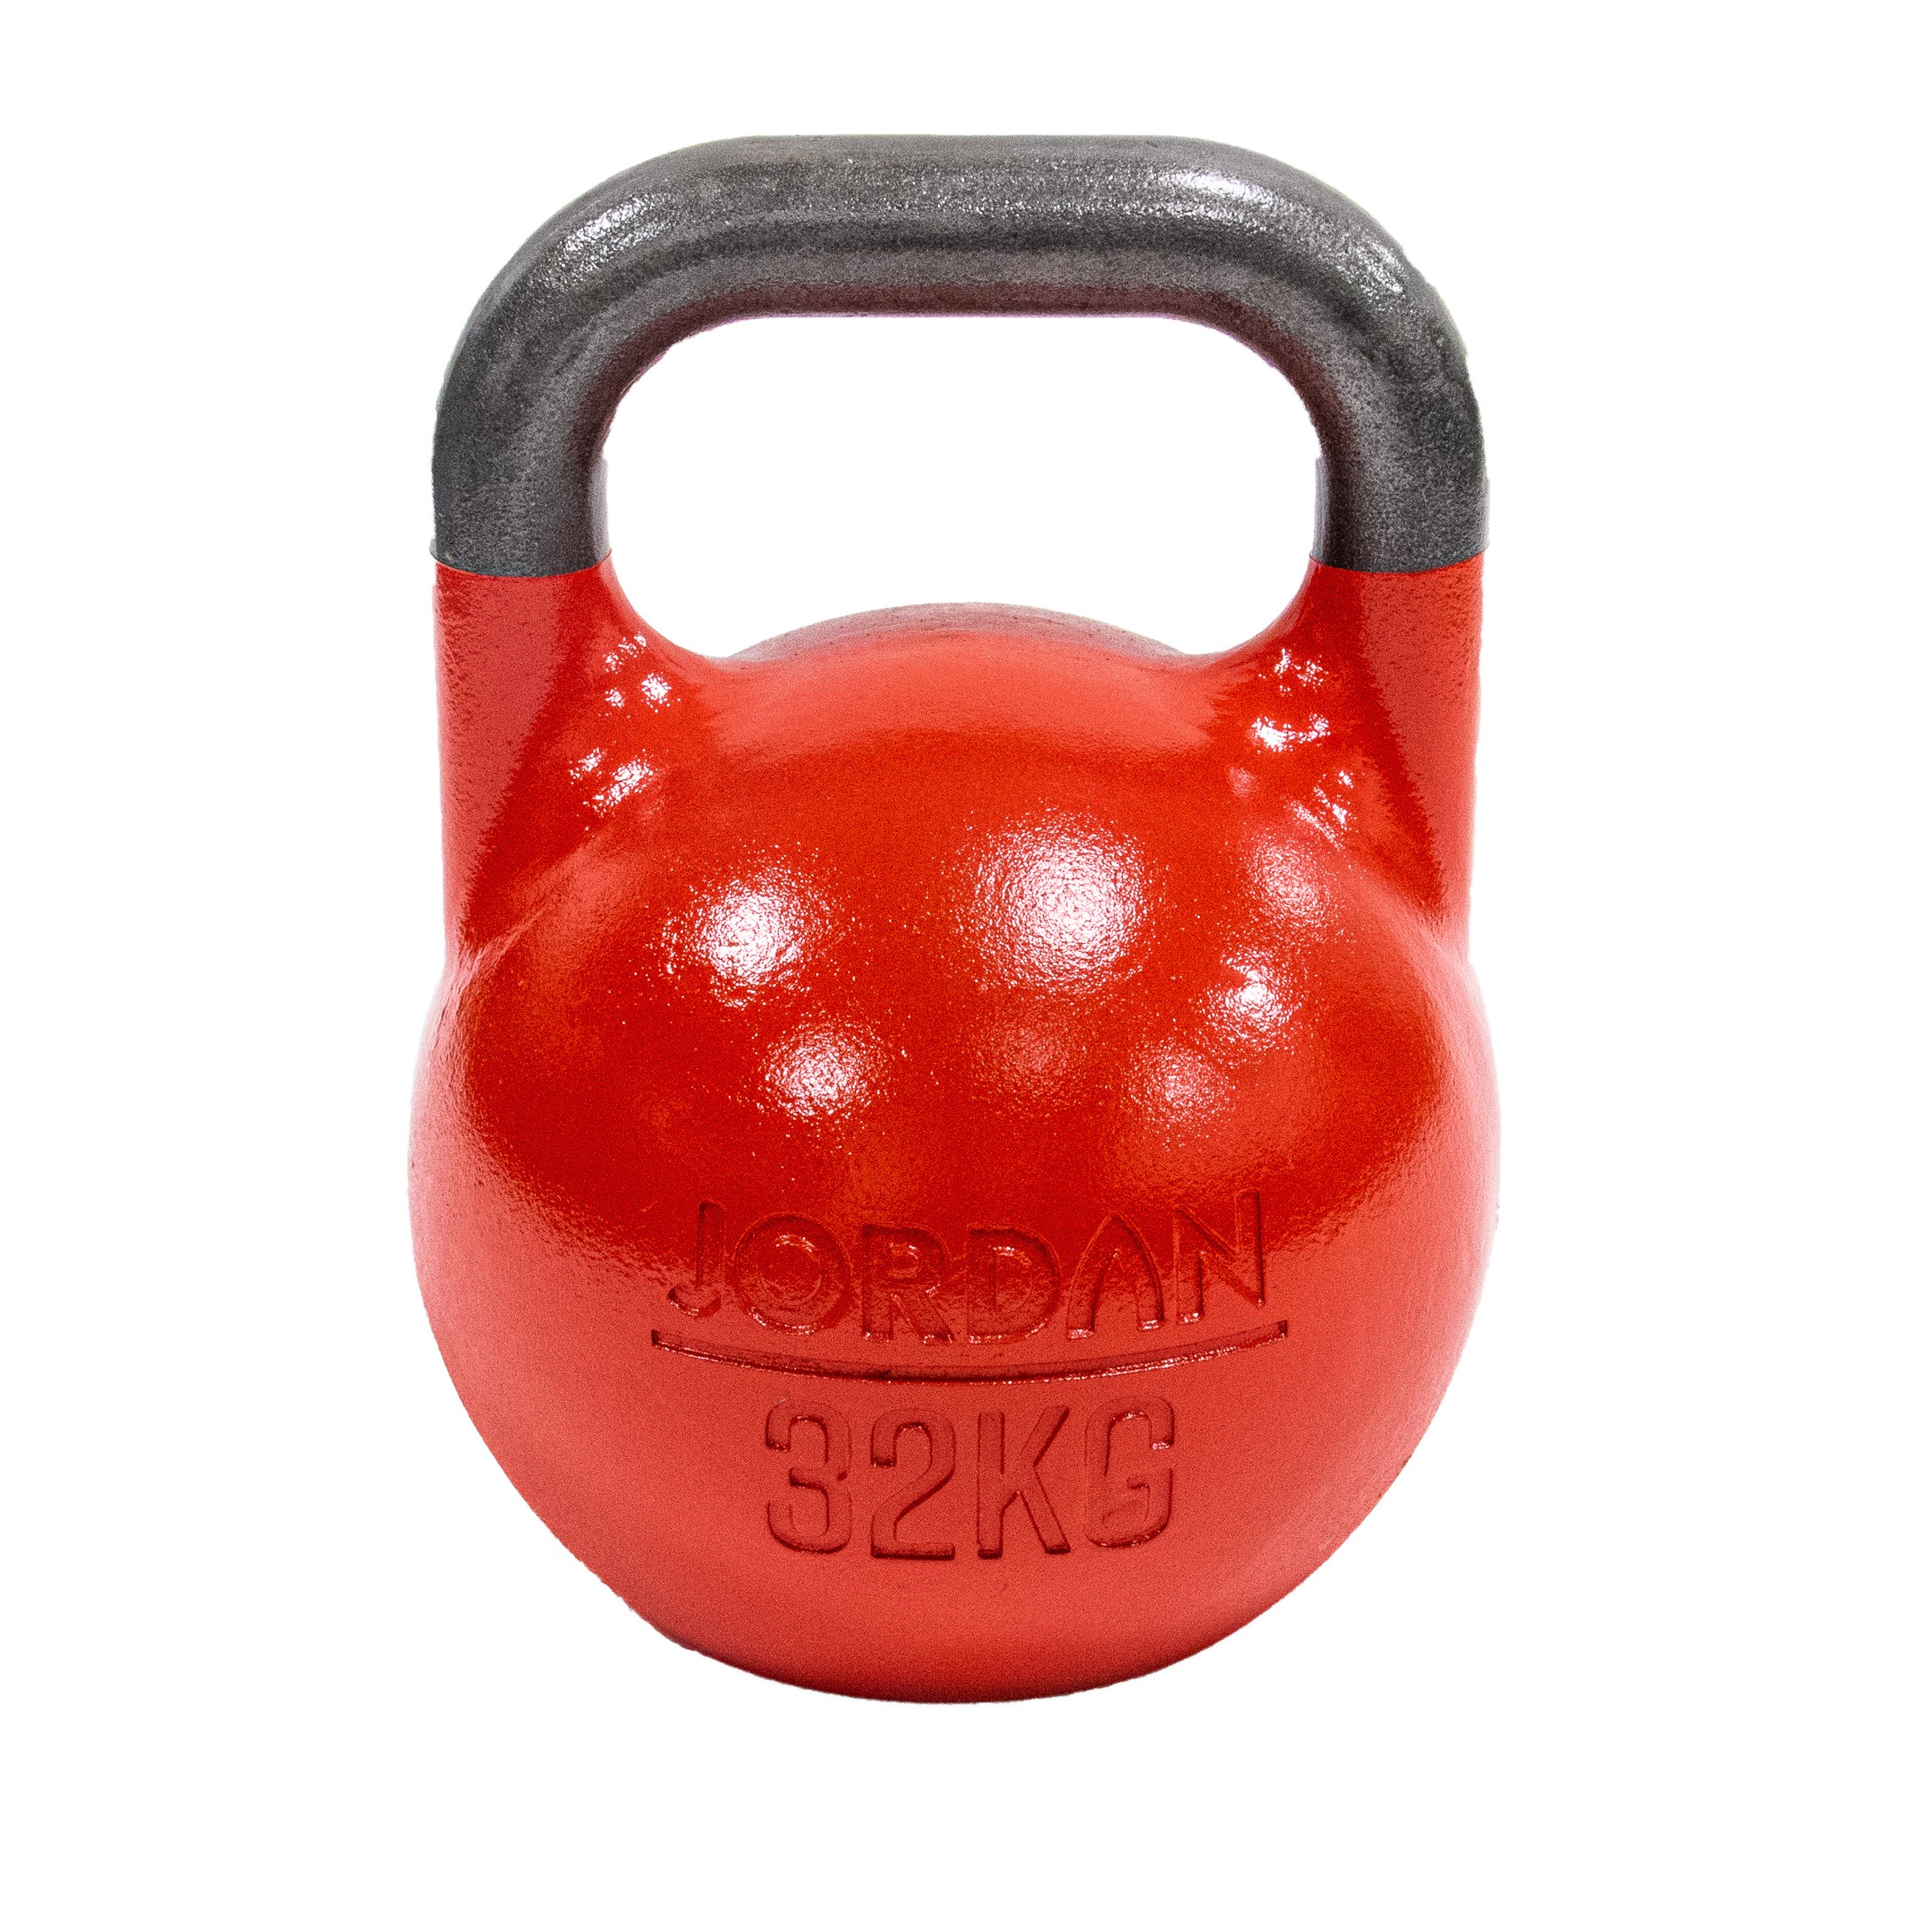 Hoorzitting bad poeder 32kg Competition kettlebell - Red (each) kopen? Ga voor kwaliteit |  AStepAhead - Competition Kettlebells - AStepAhead